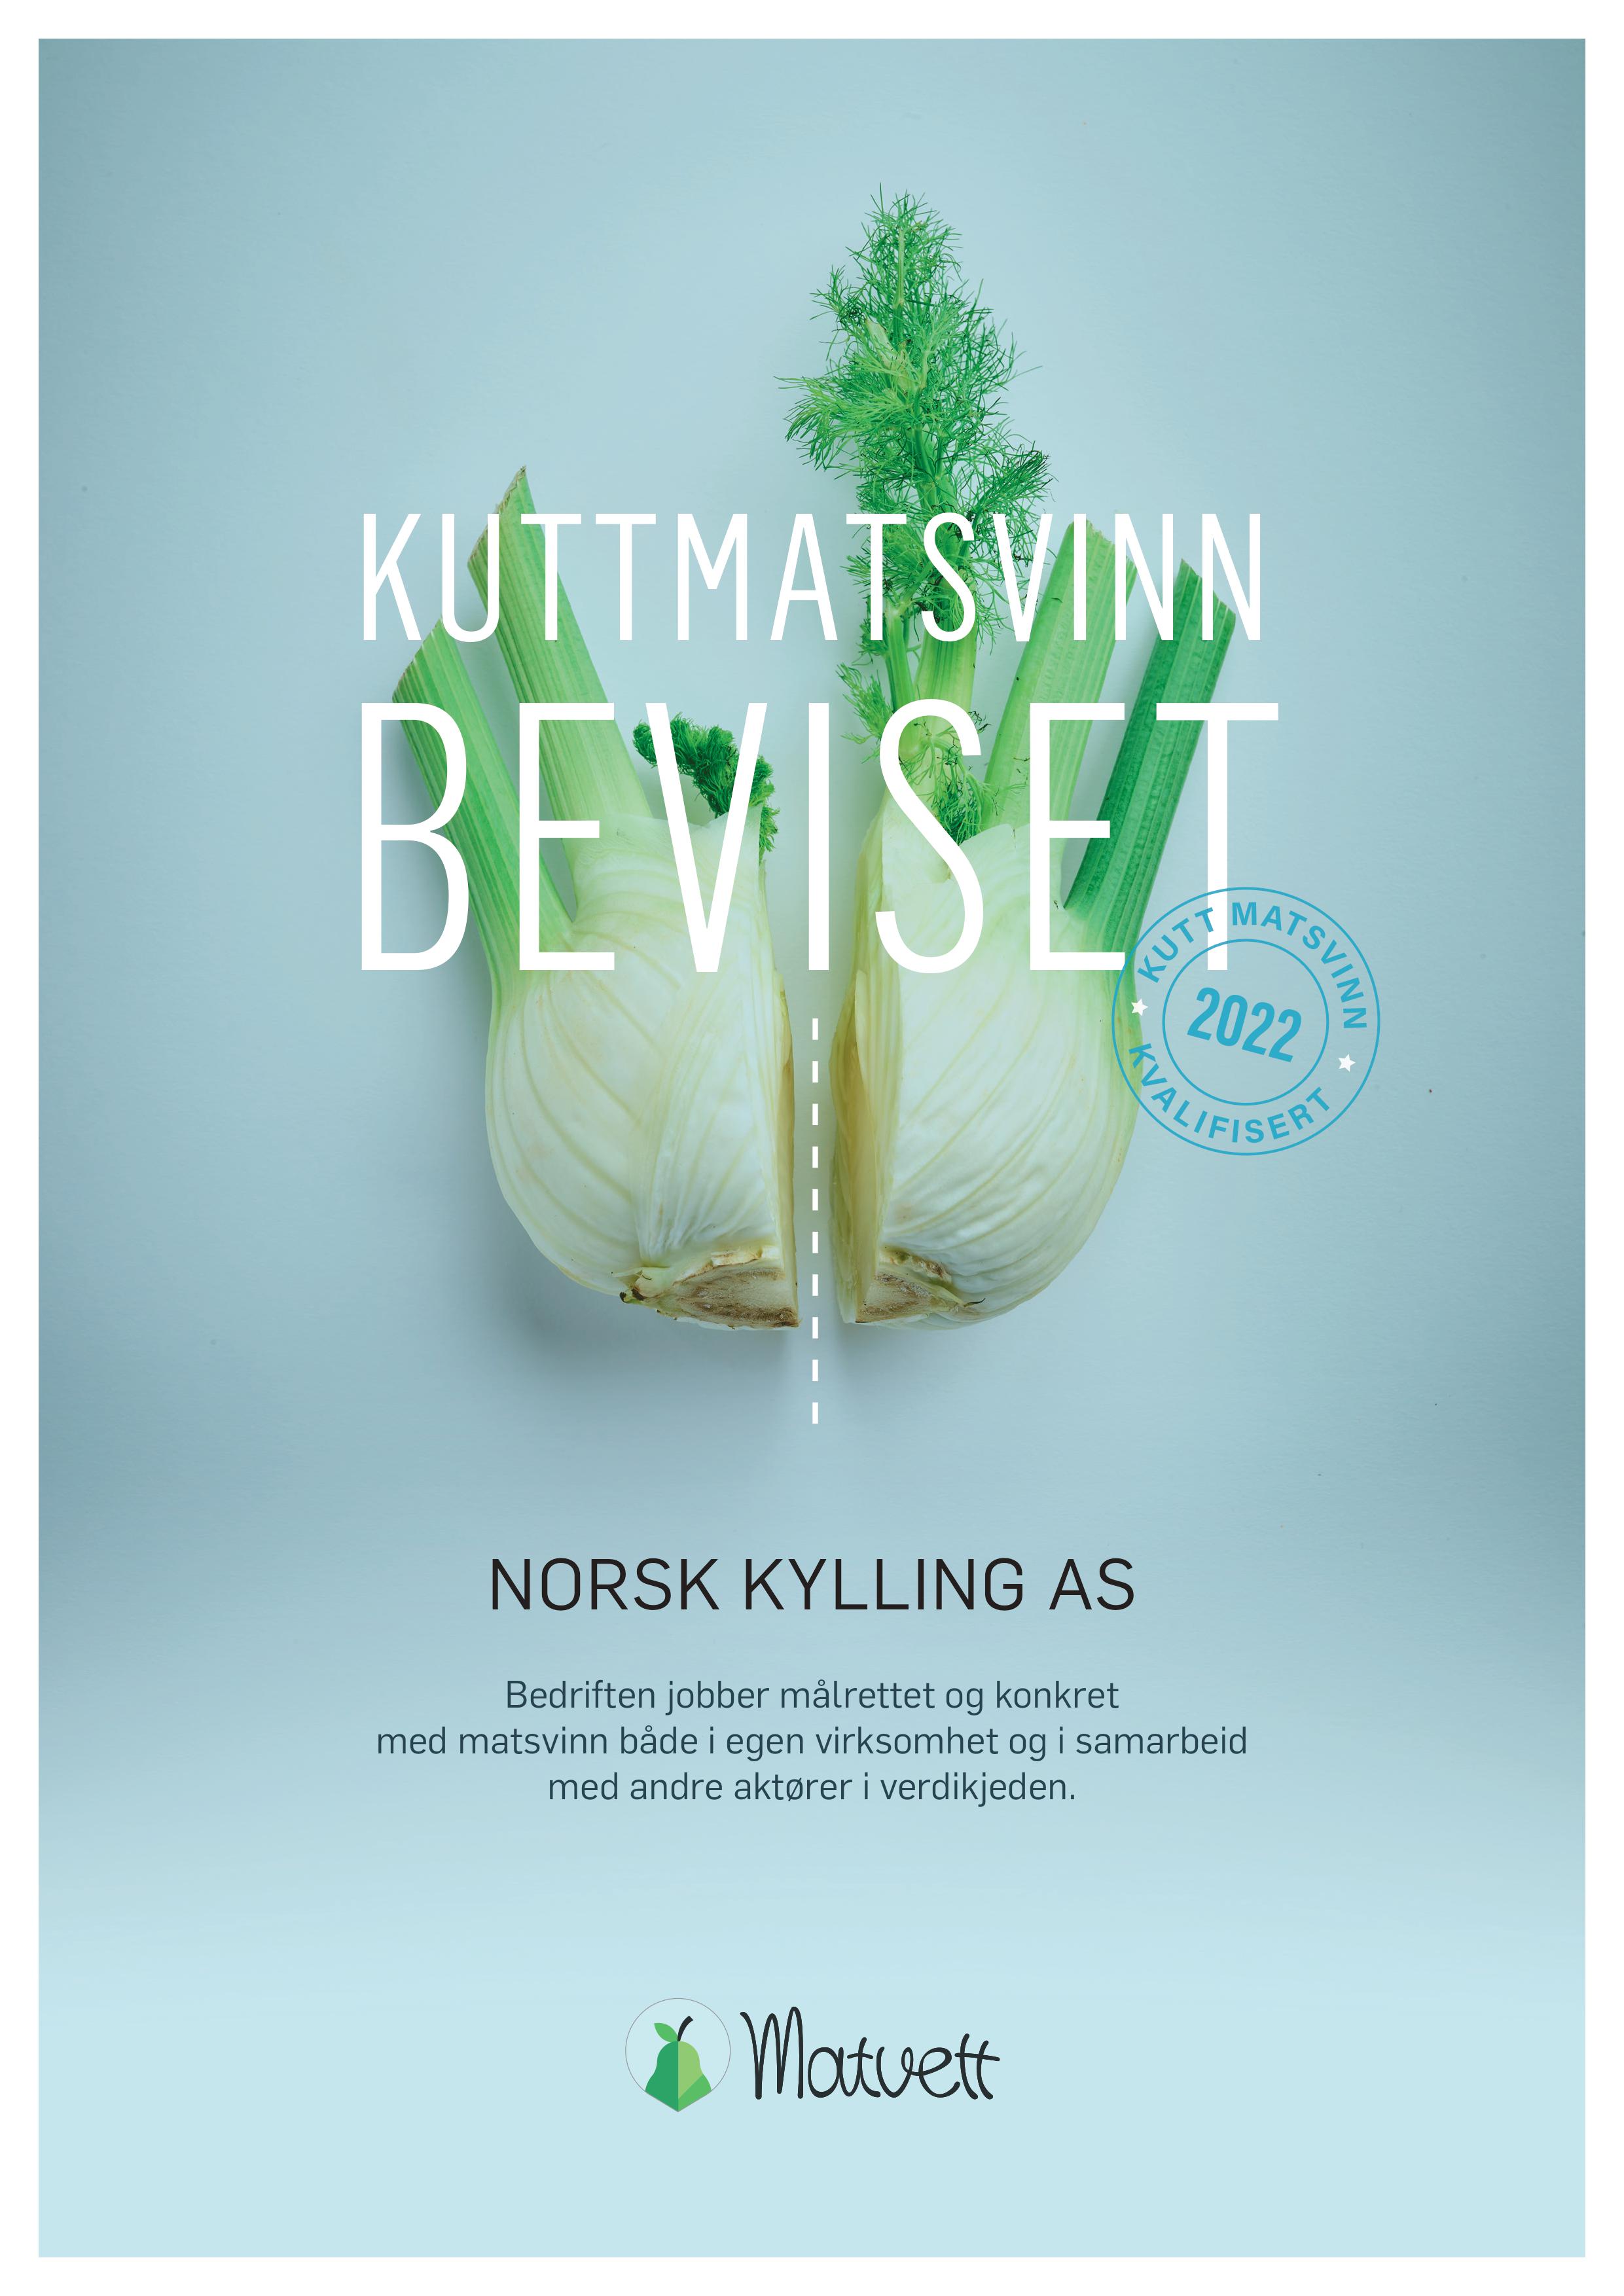 Norsk Kylling mottar KuttMatsvinn-beviset